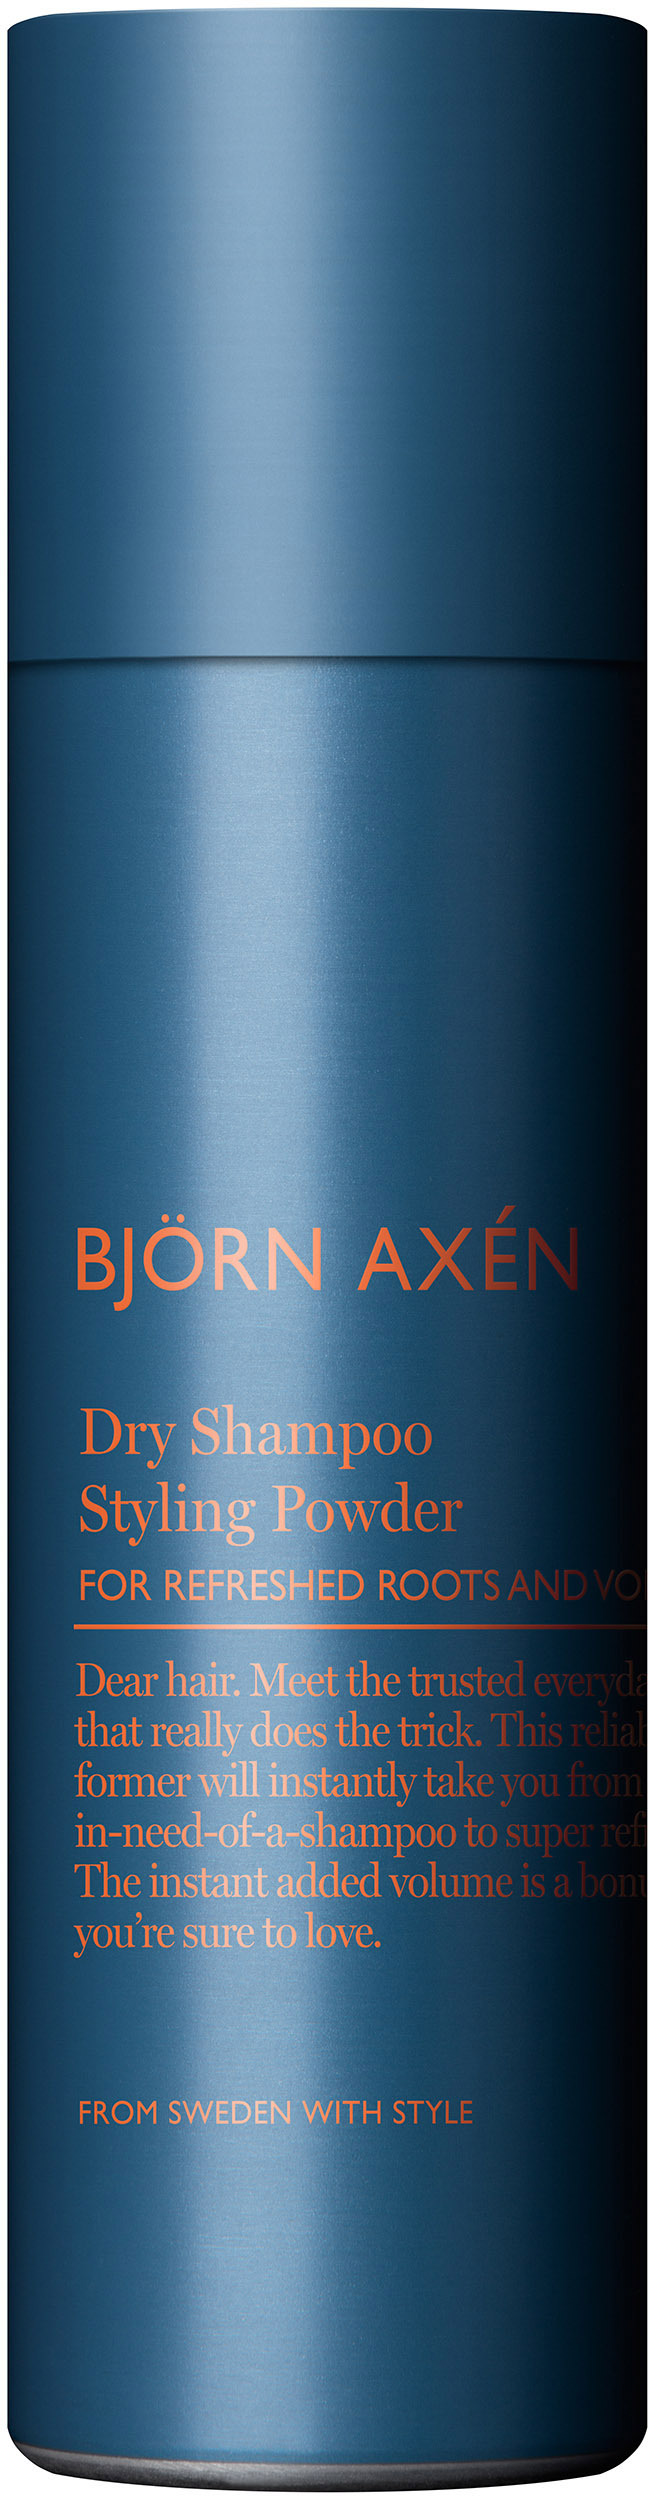 Björn Axén Styling Powder Dry Shampoo 200 ml 